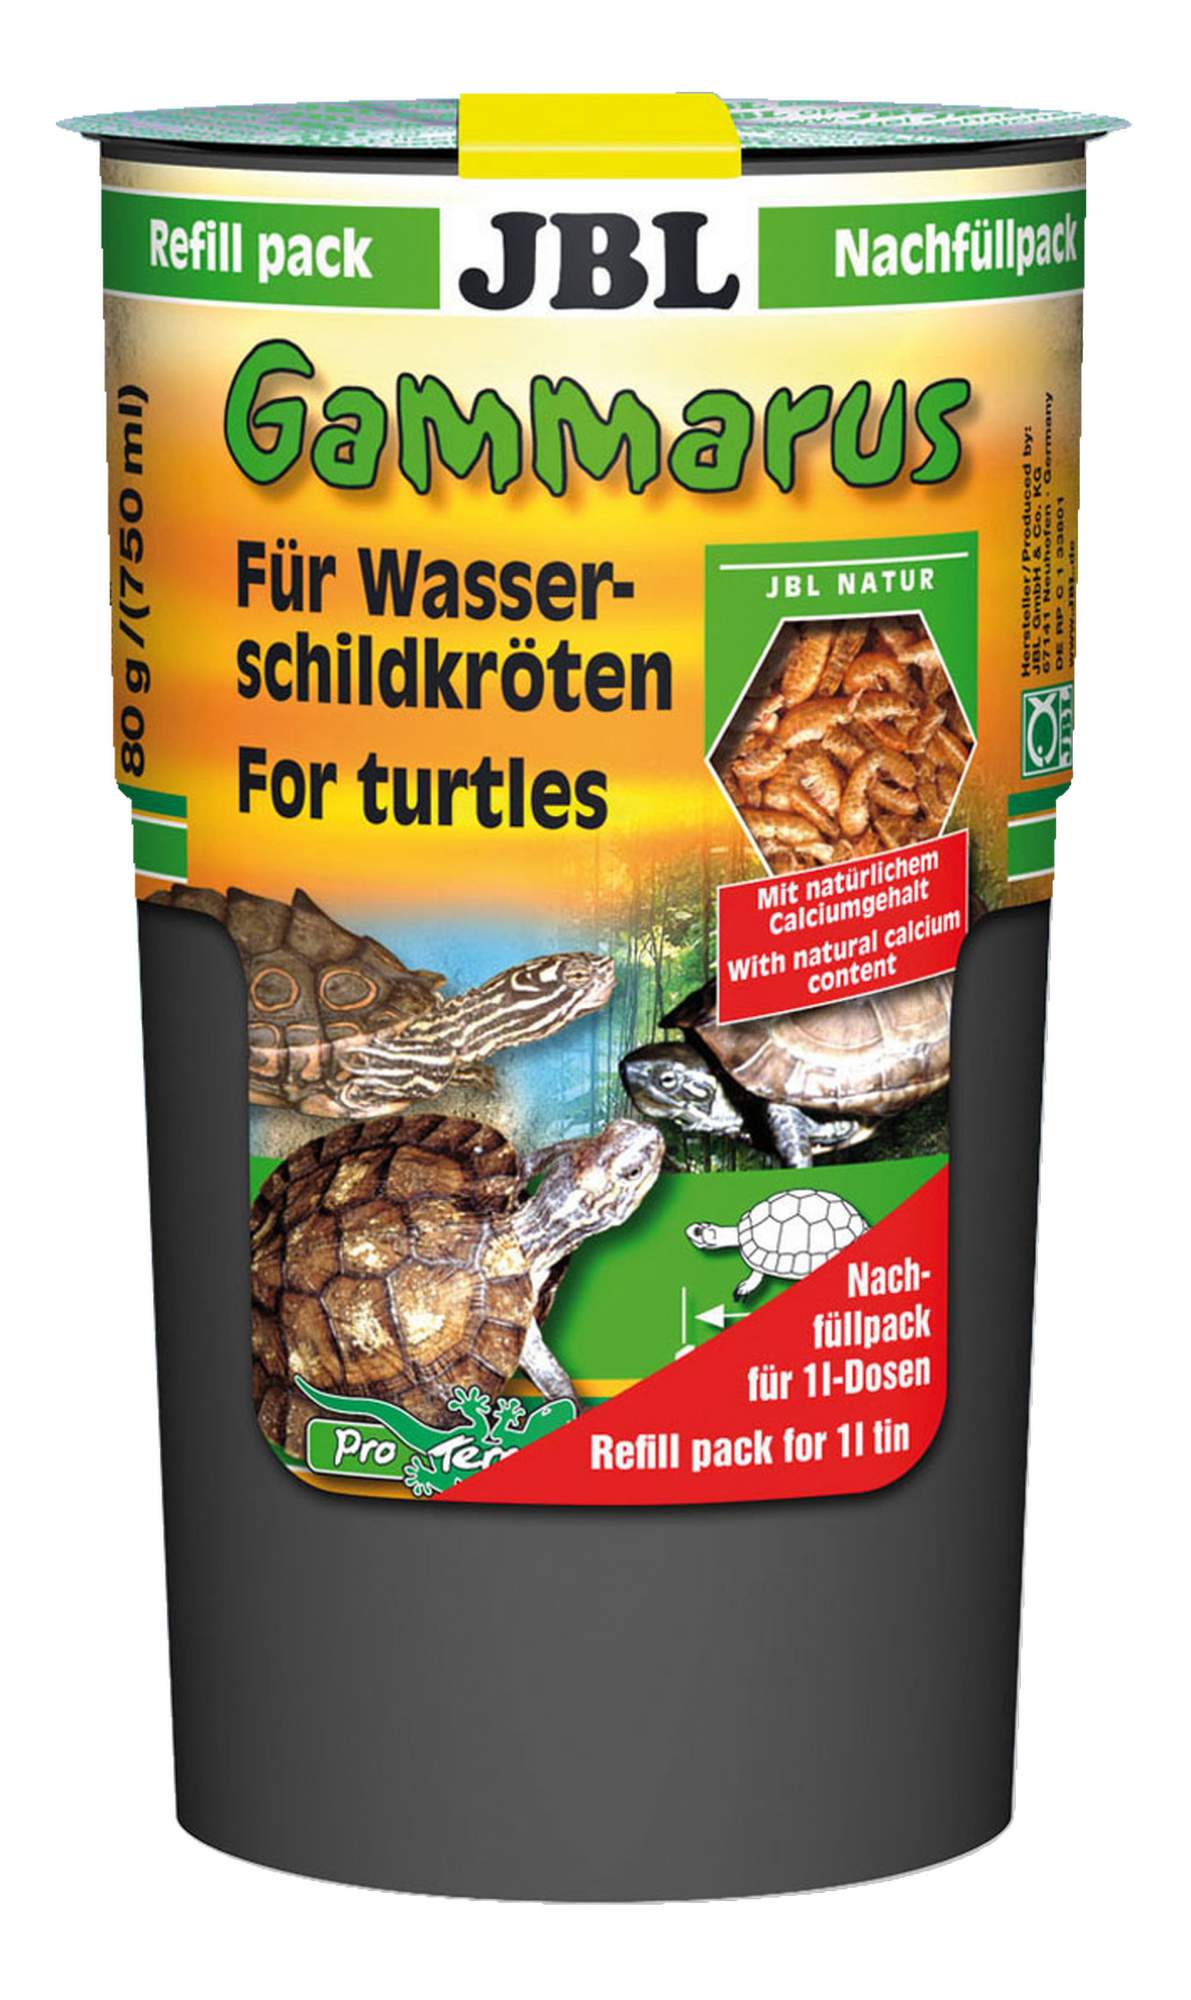 Корм для рептилий JBL Gammarus для водных черепах, очищенный, специальная упаковка, 750мл